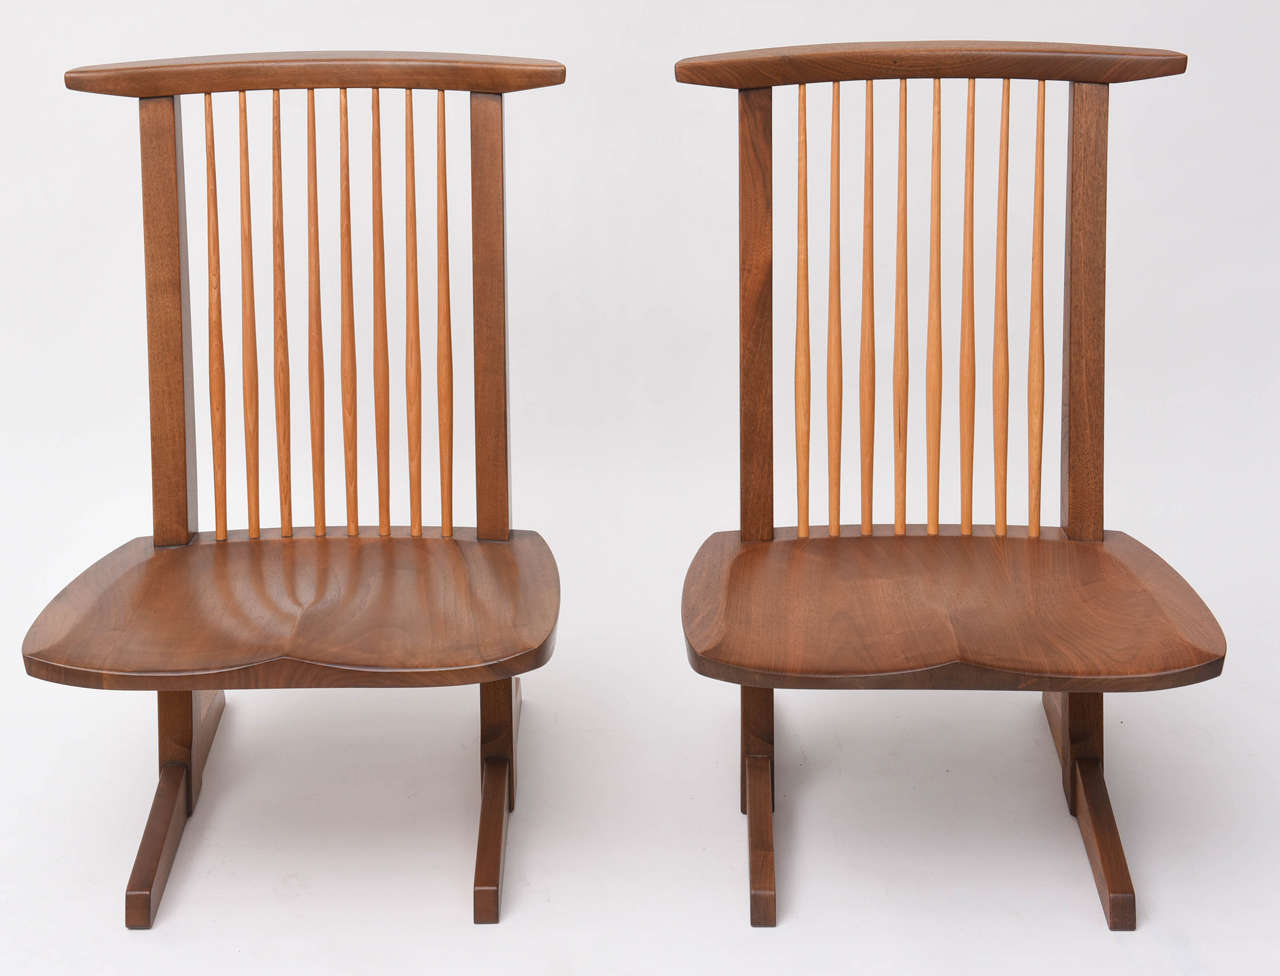 George Nakashima Conoid niedrige Stühle. Ein selten gesehener Entwurf aus dem Atelier.